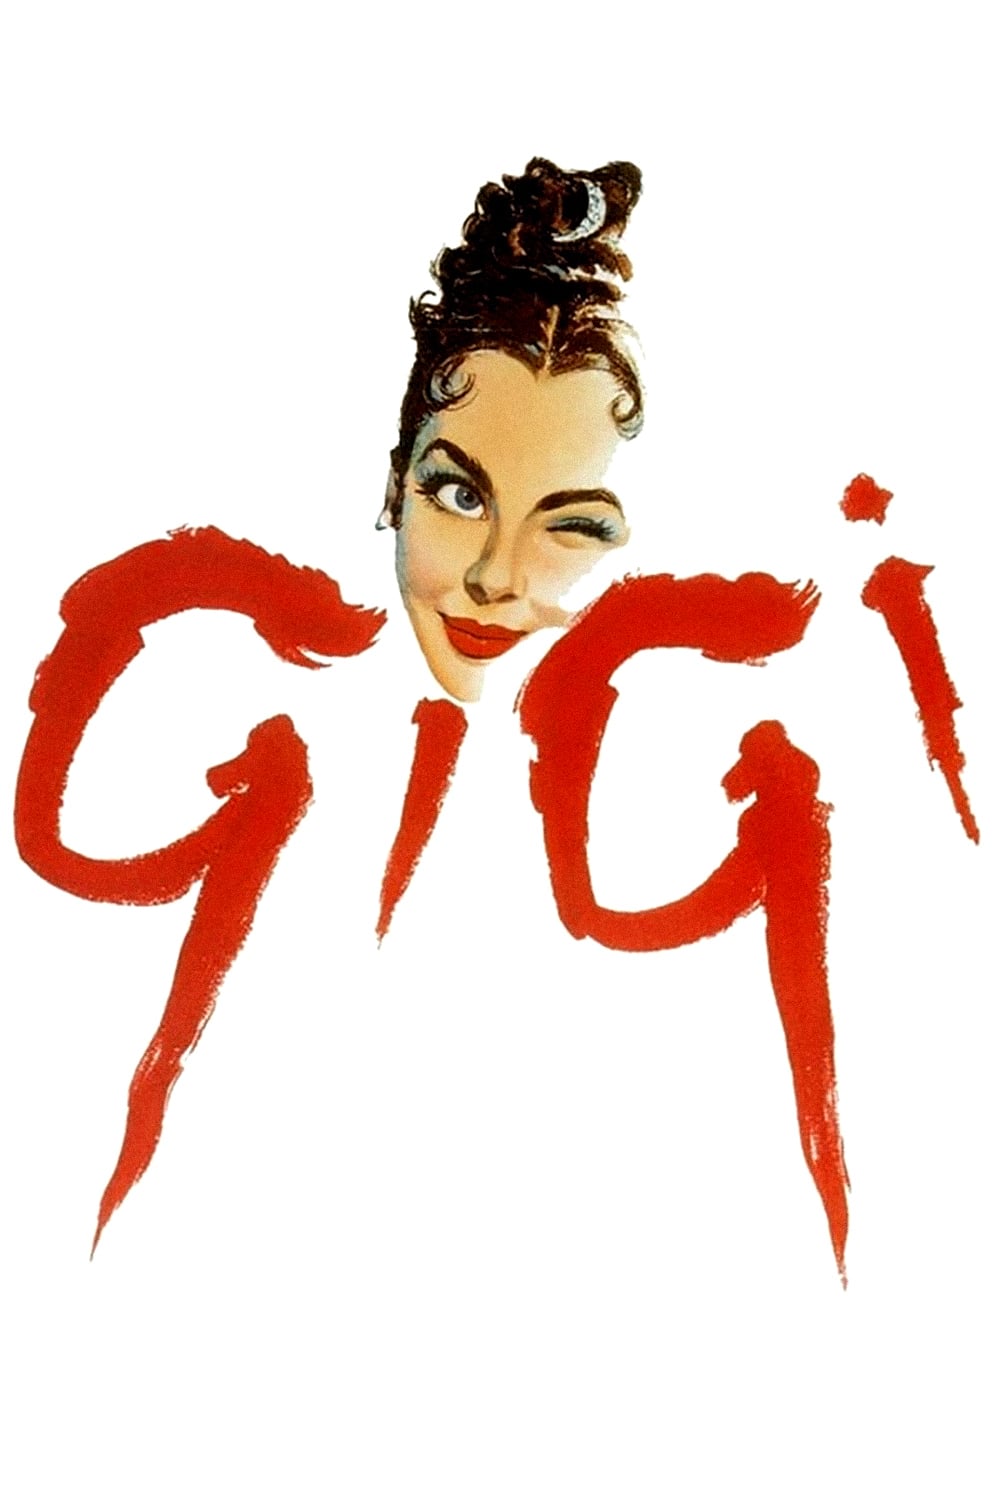 Poster Gigi